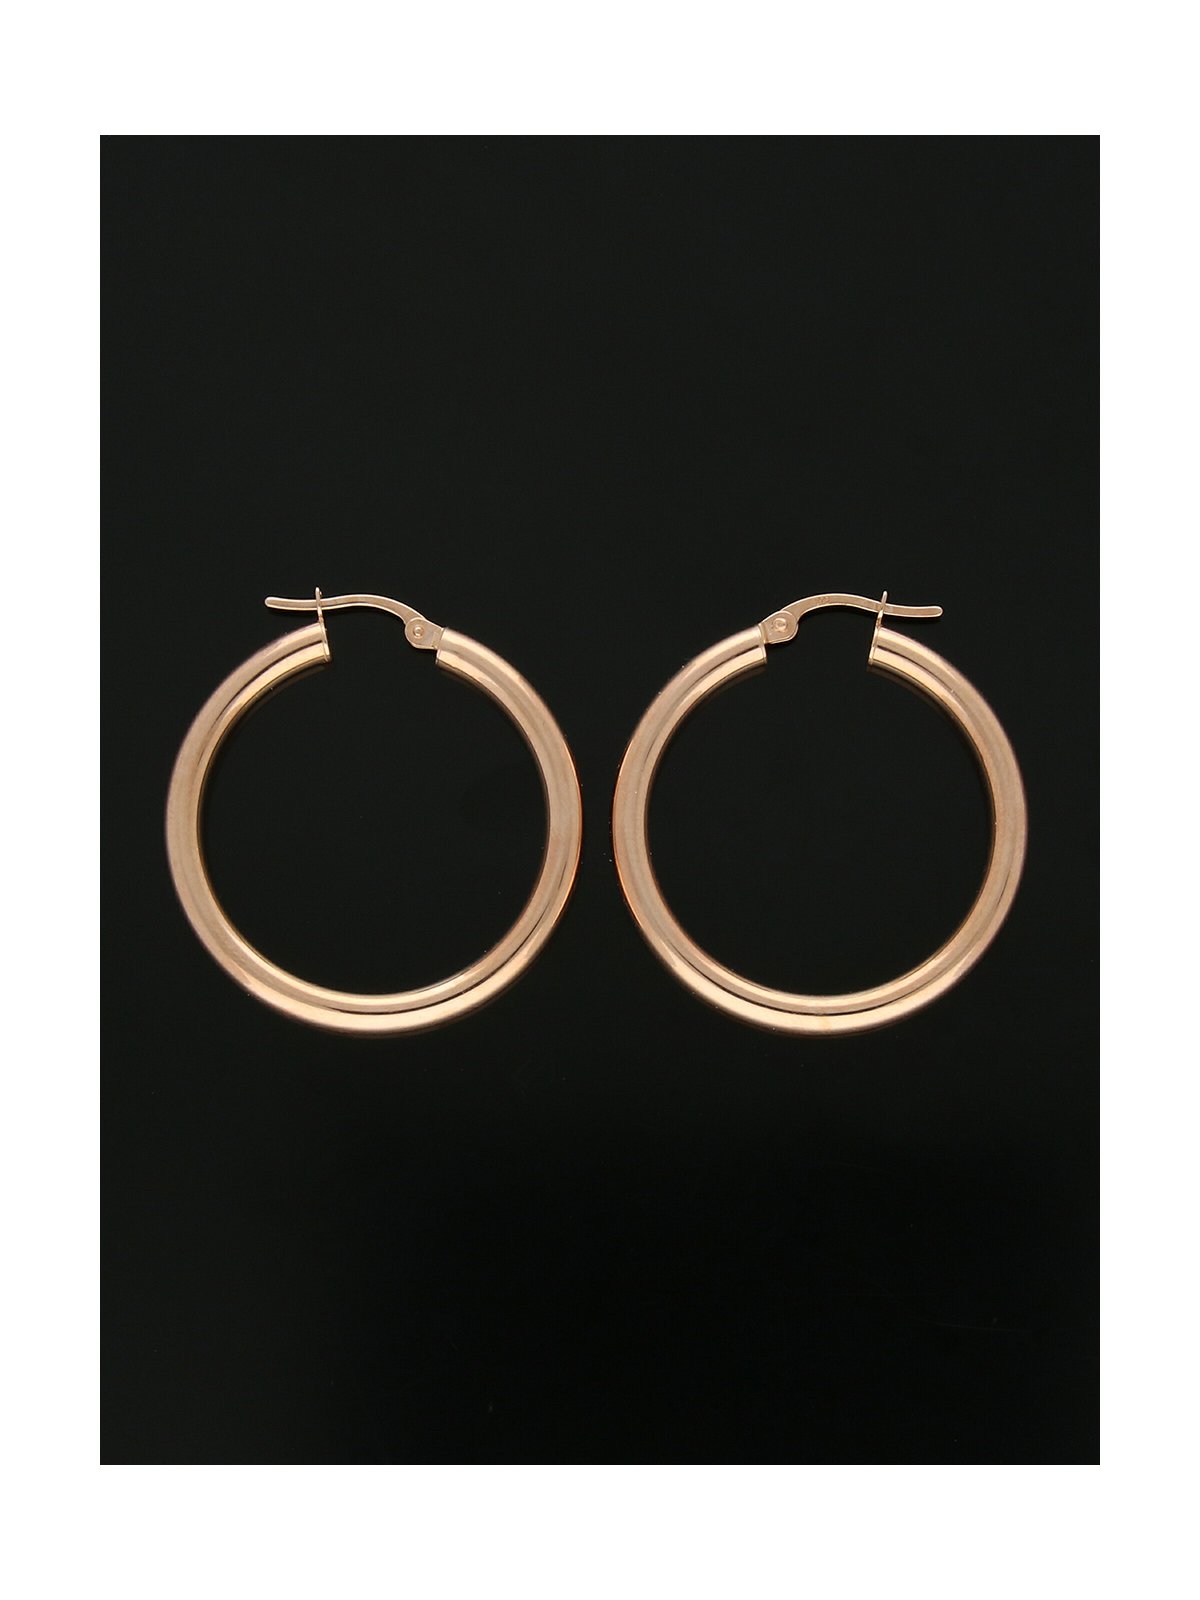 Round Hoop Earrings 30mm in 9ct Rose Gold